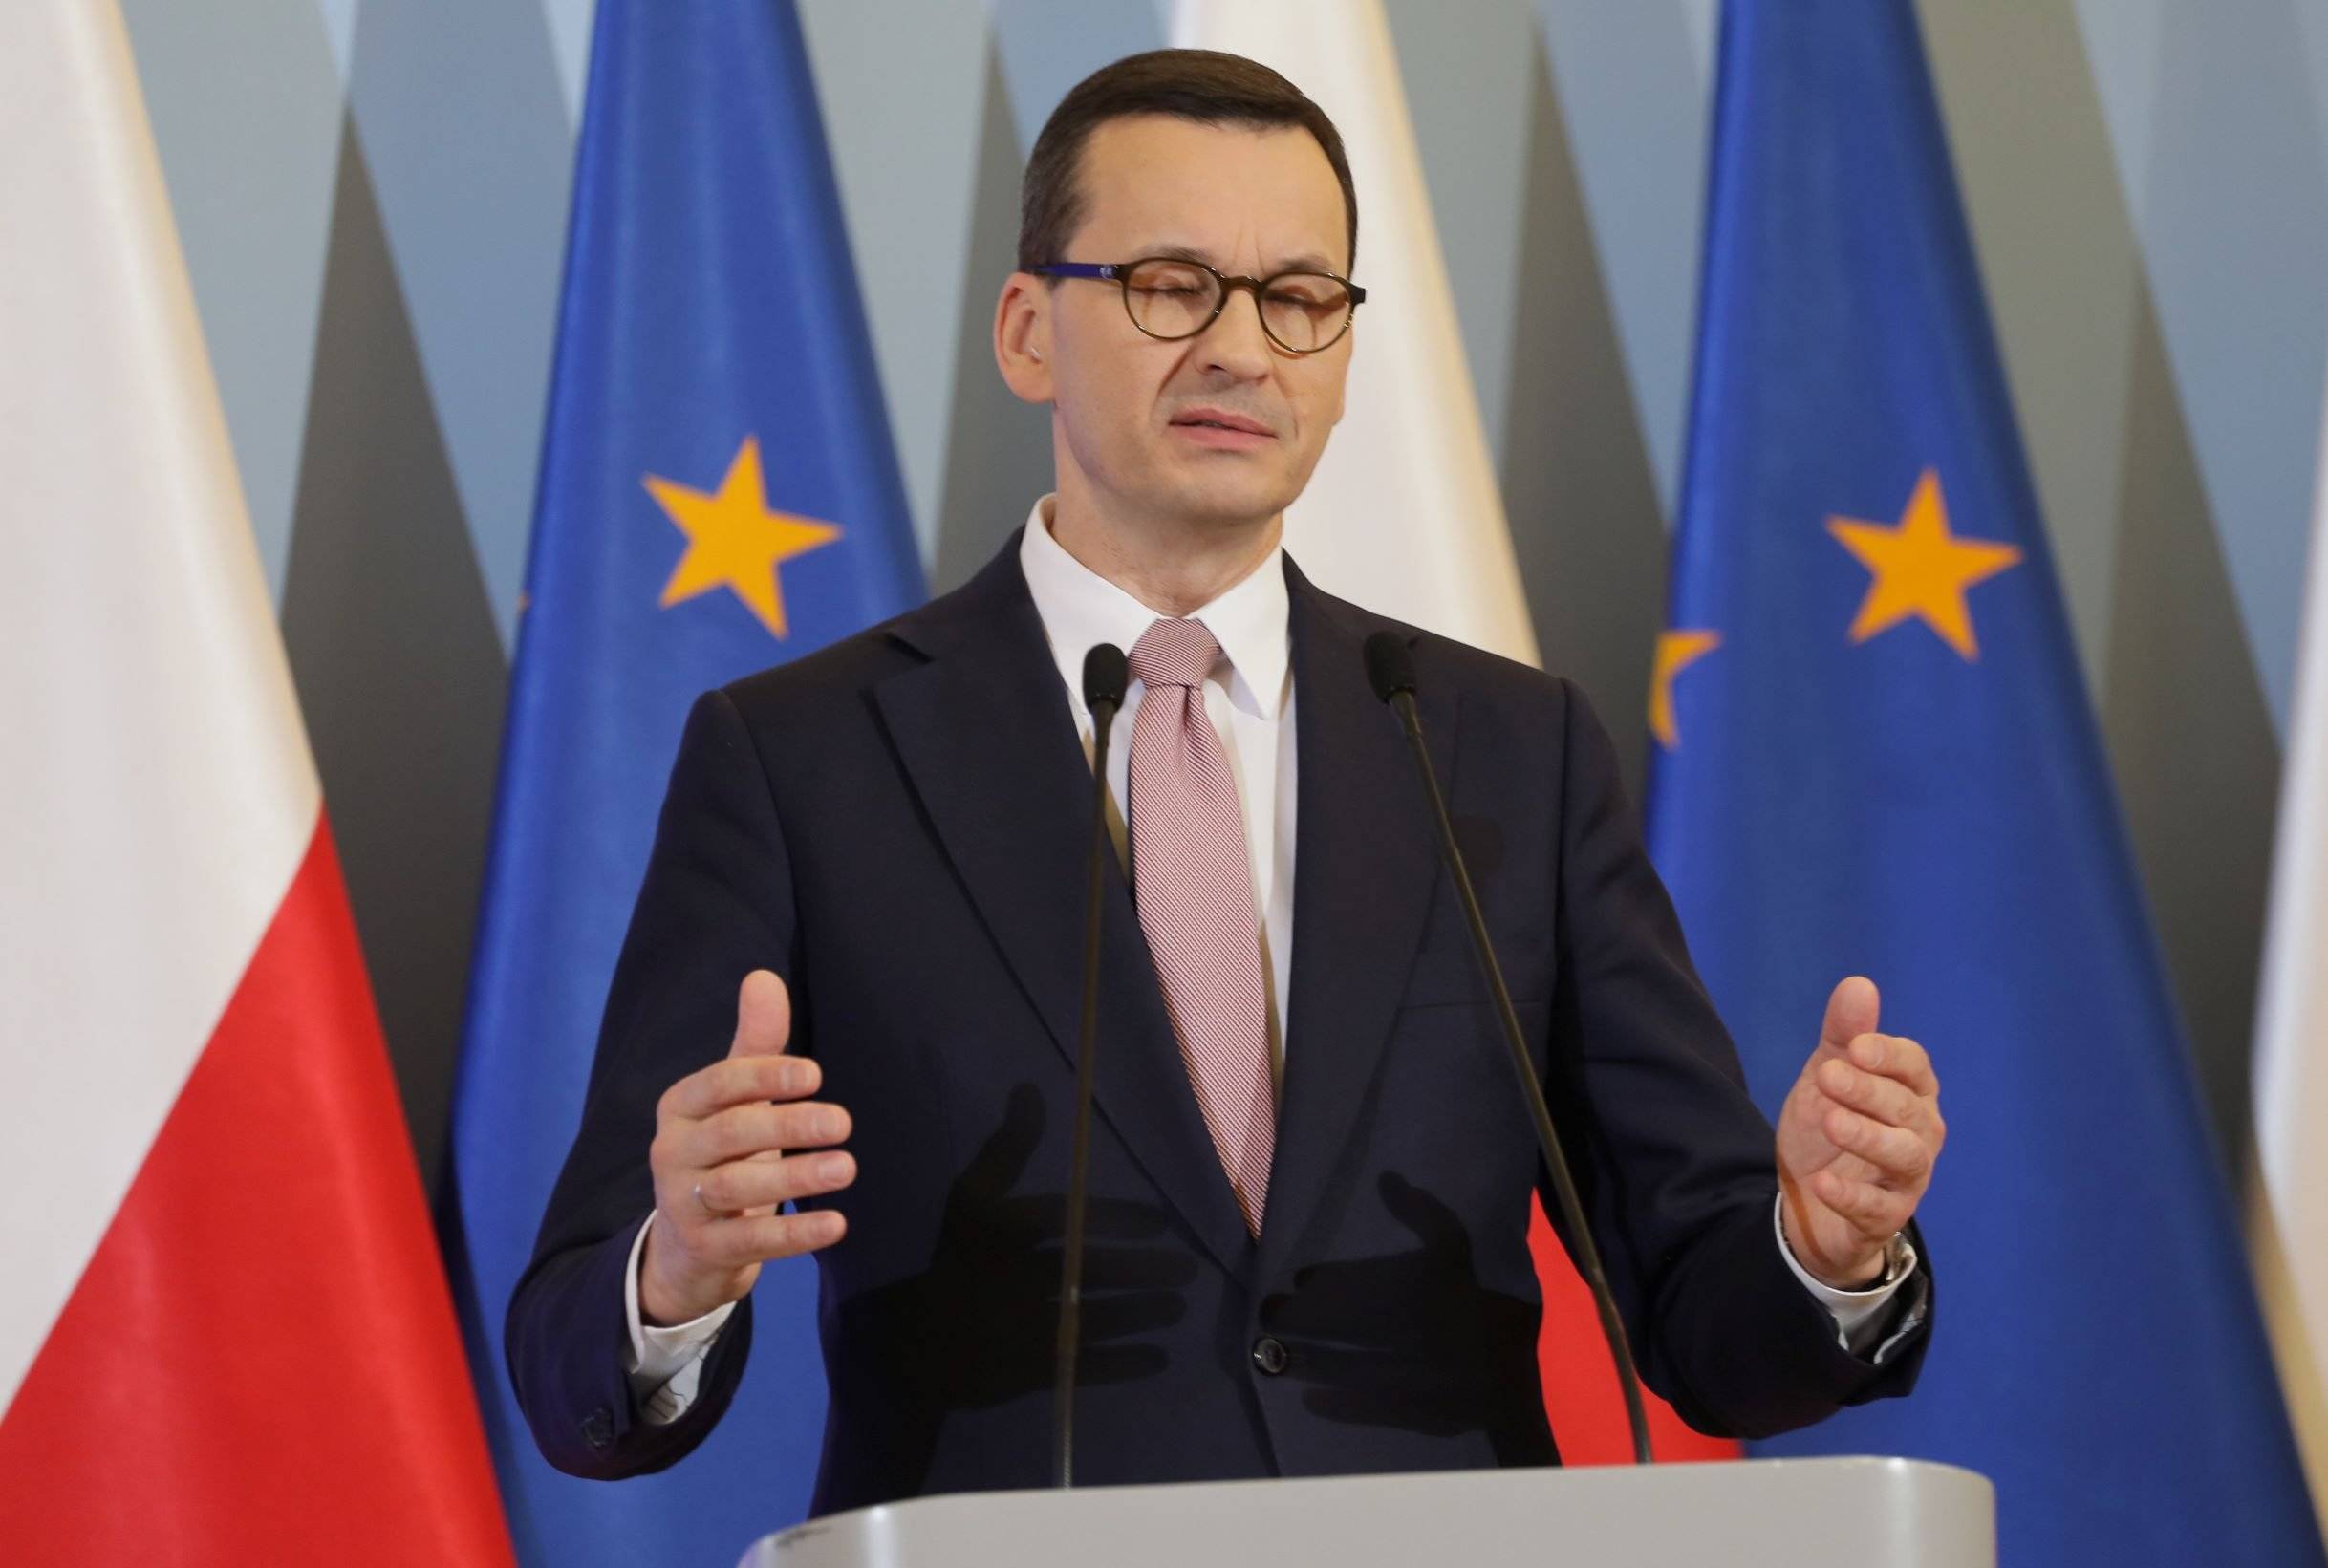 Premier Mateusz Morawiecki - zakaz wychodzenia z domu, ale na wybory pójdziemy